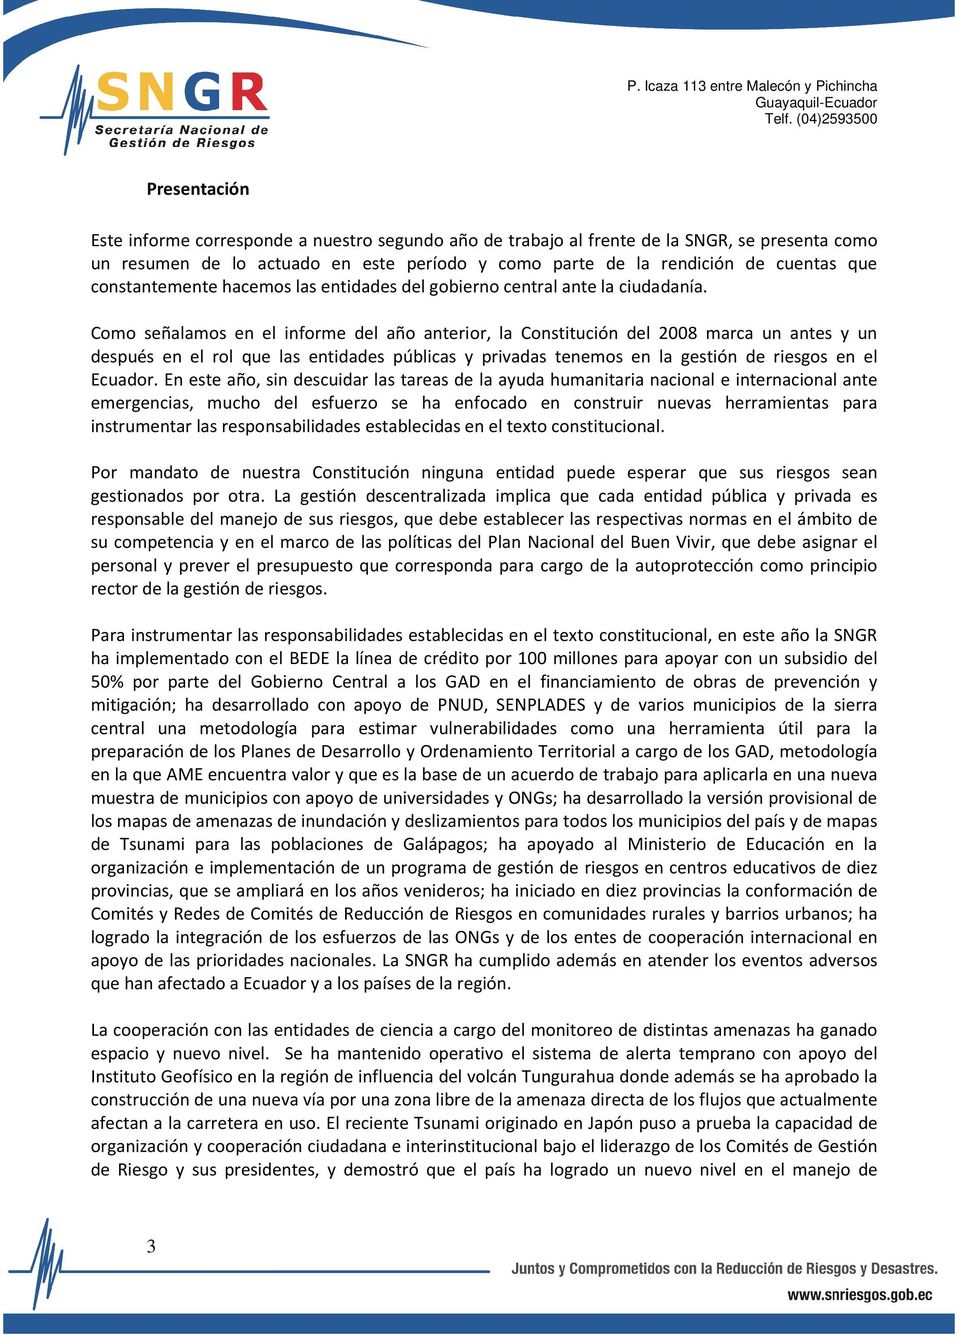 Como señalamos en el informe del año anterior, la Constitución del 2008 marca un antes y un después en el rol que las entidades públicas y privadas tenemos en la gestión de riesgos en el Ecuador.